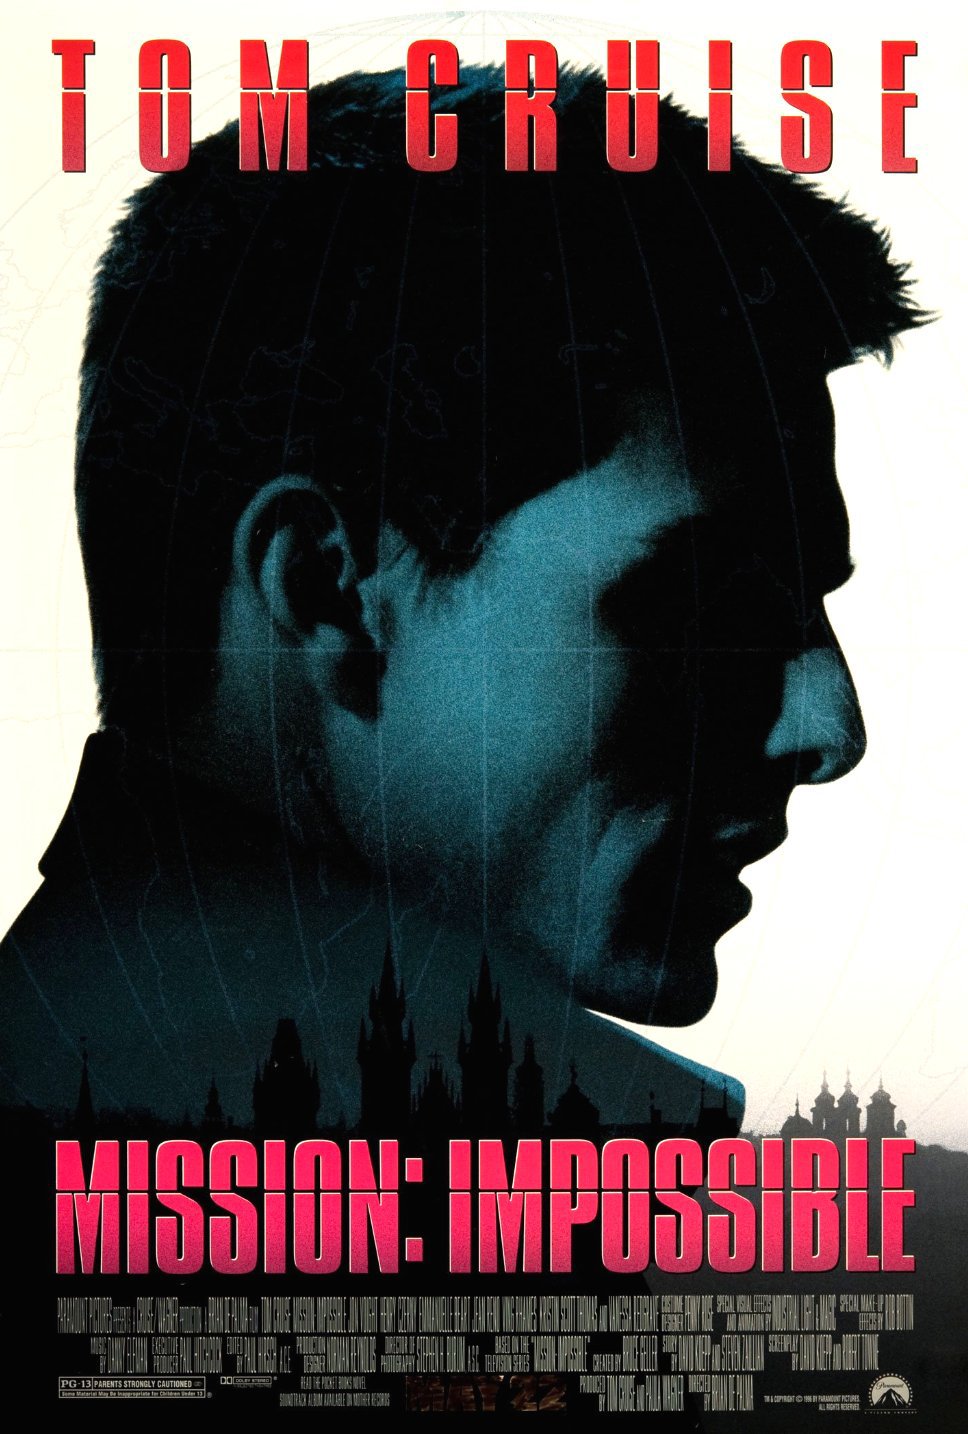 Mission: Impossible | Whumpapedia Wiki | Fandom